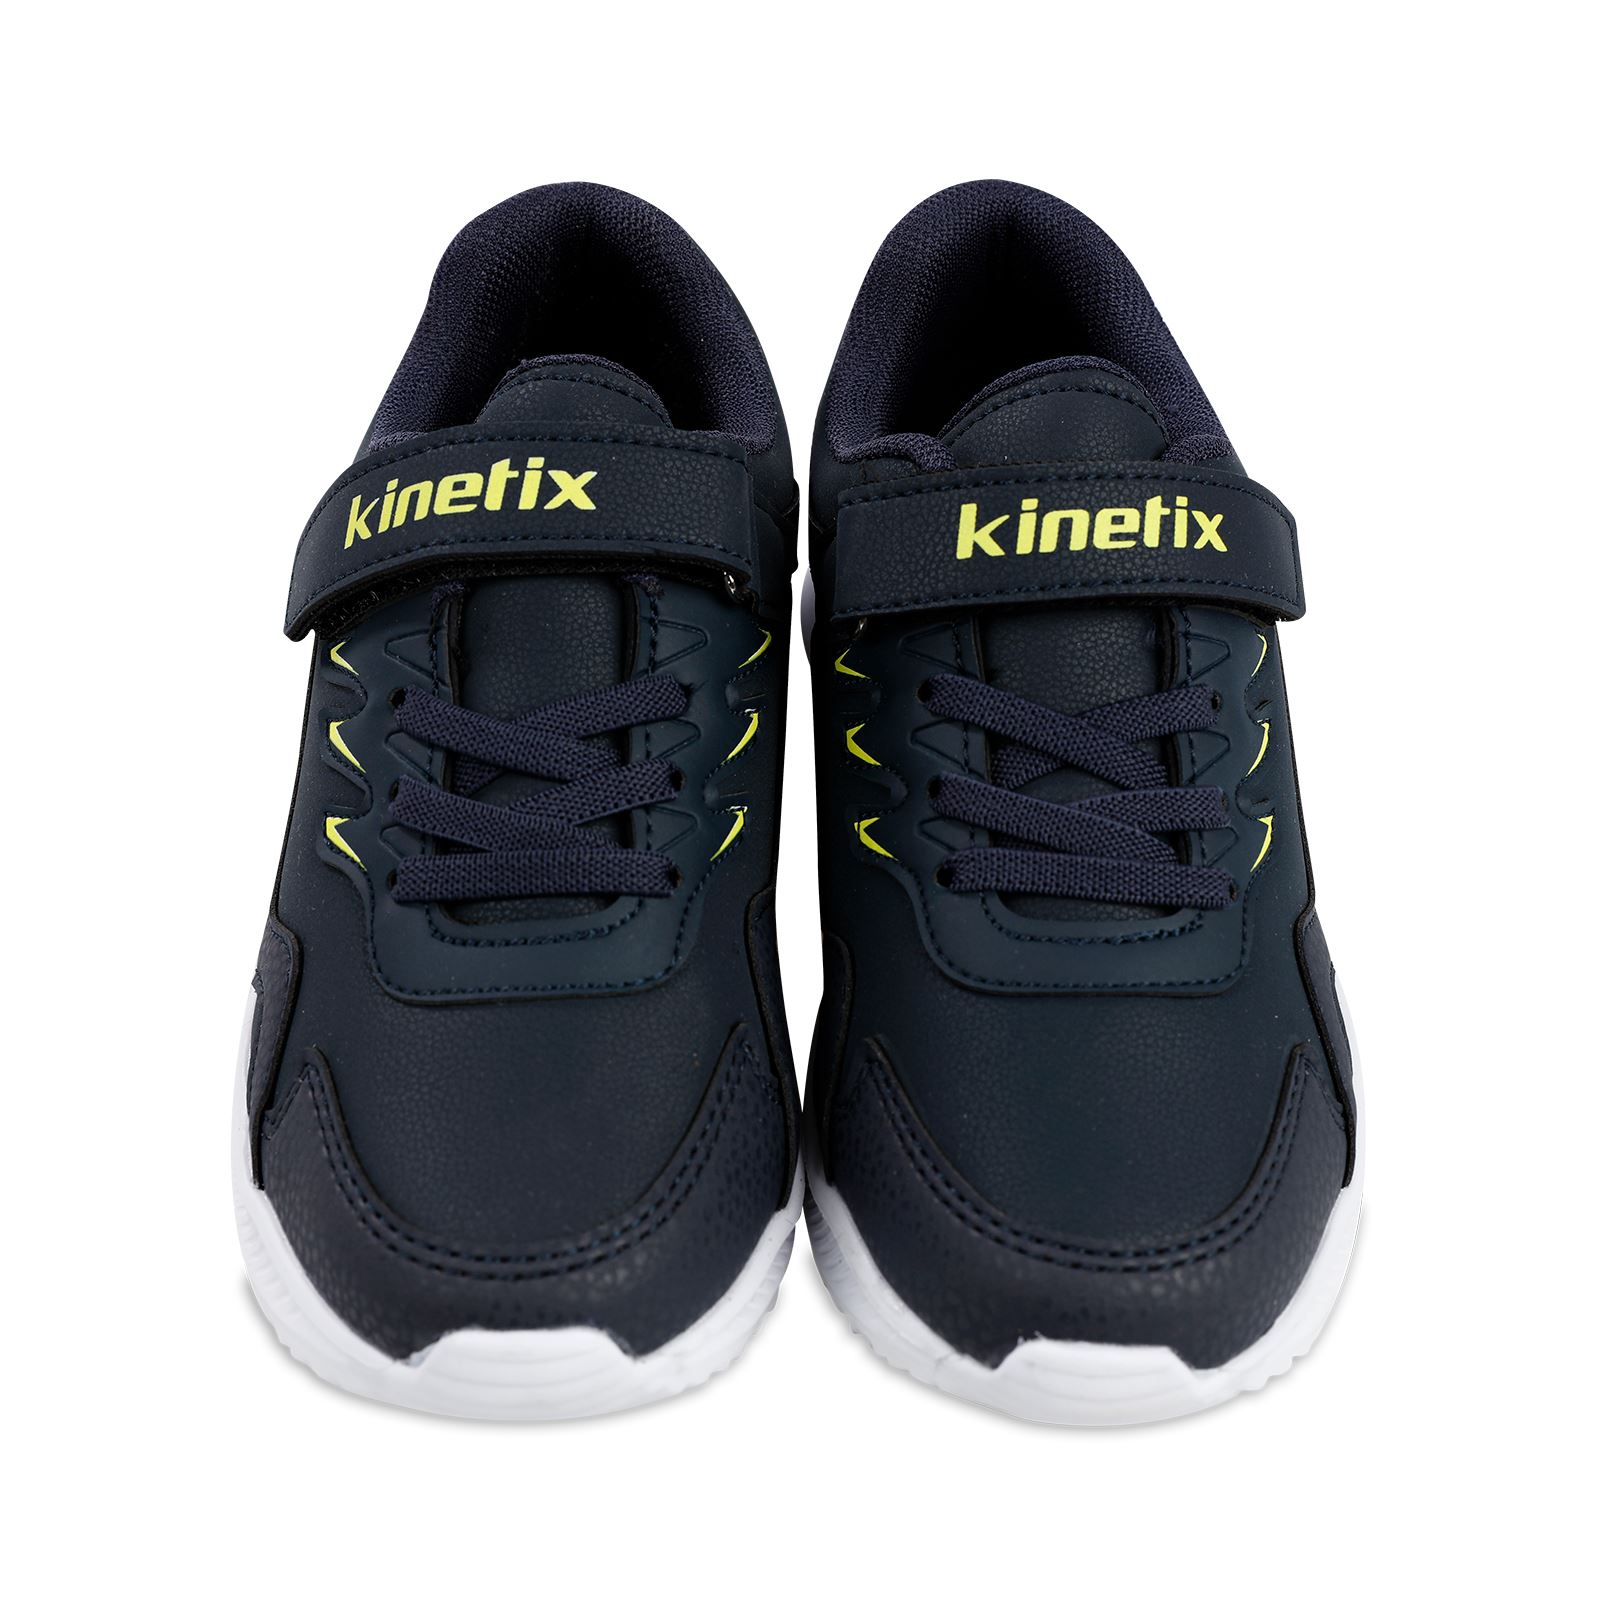 Kinetix Erkek Çocuk Spor Ayakkabı 31-35 Numara Lacivert